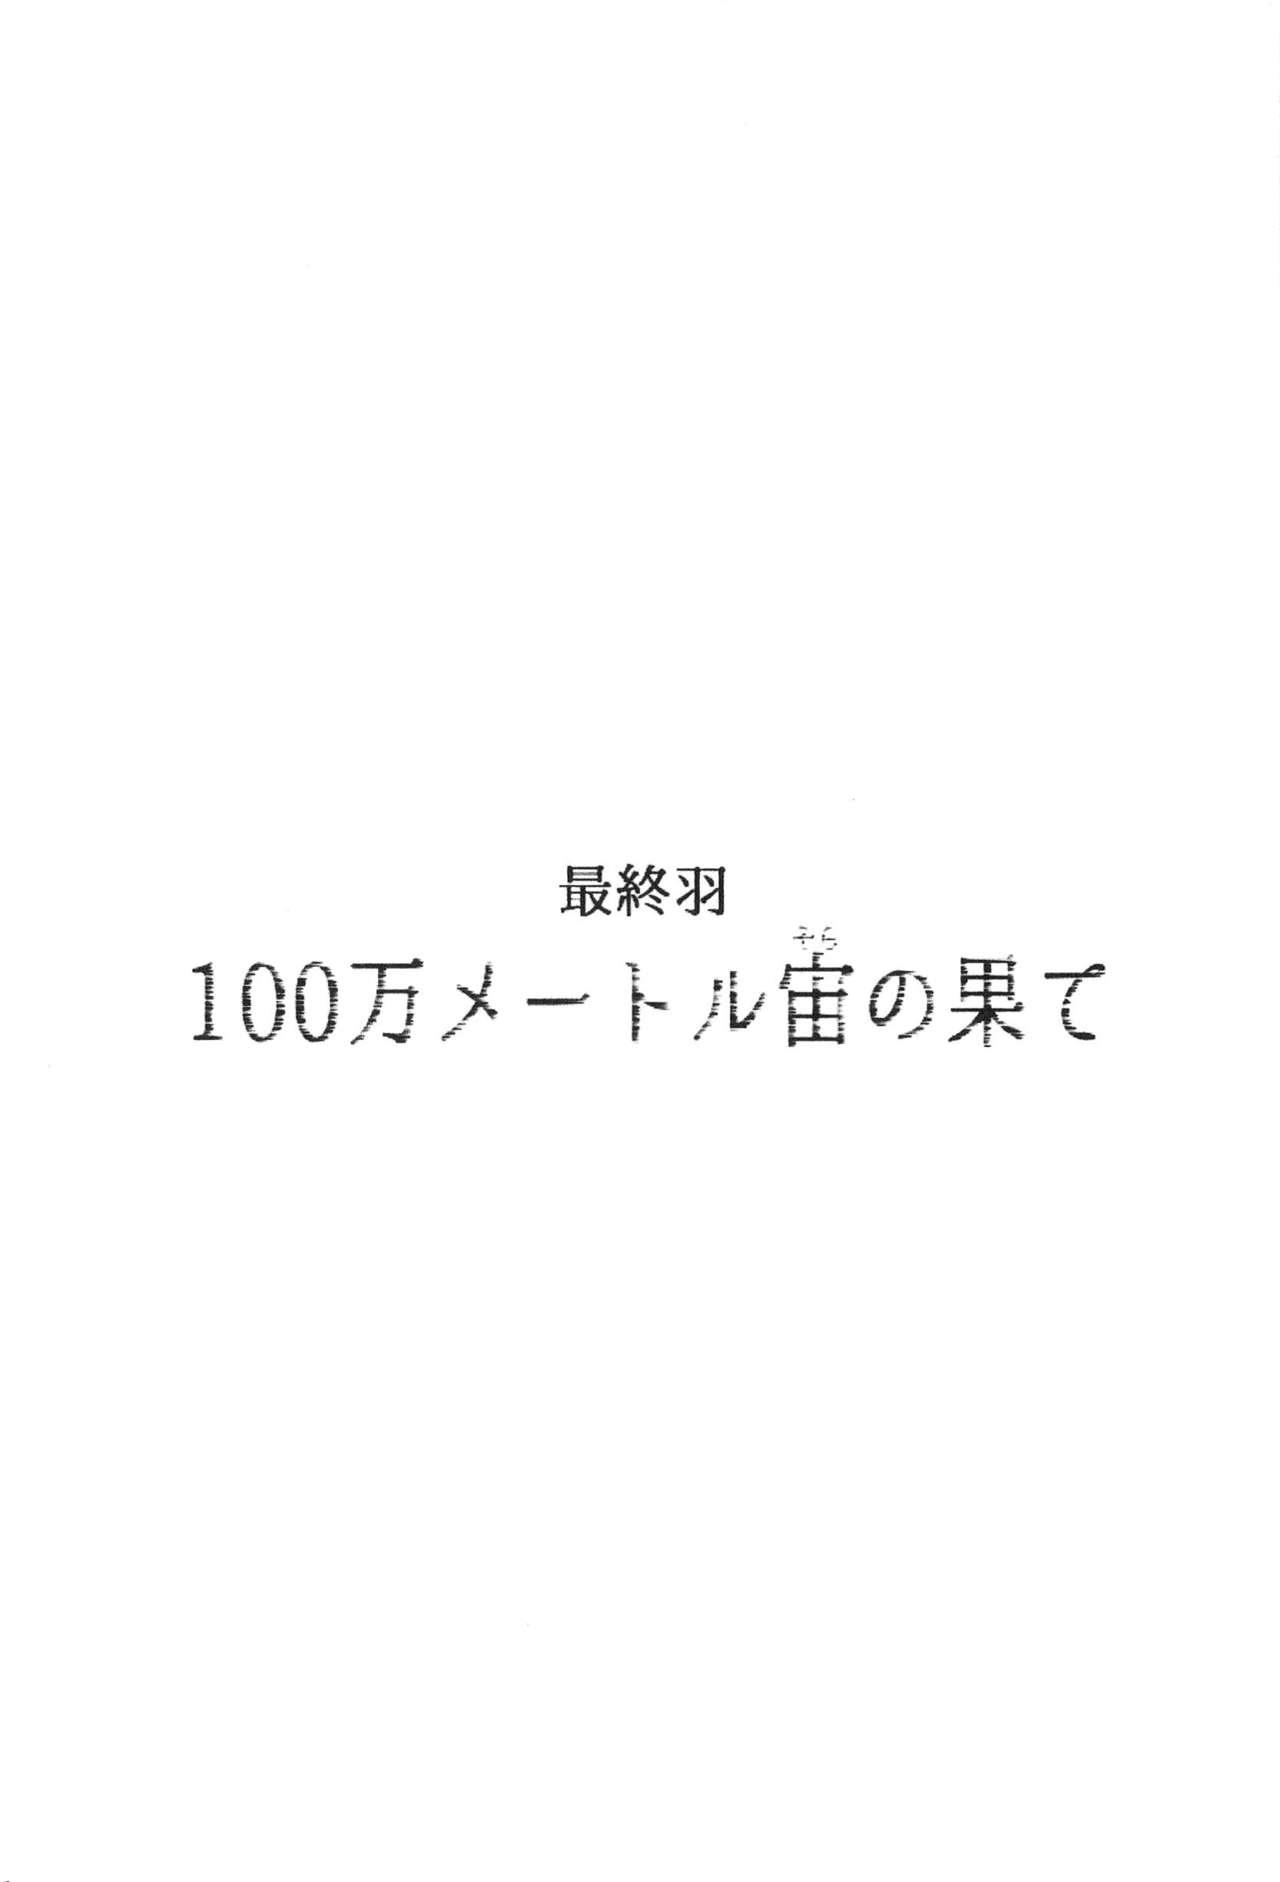 100 Man Mairu no Mizu no Soko 141